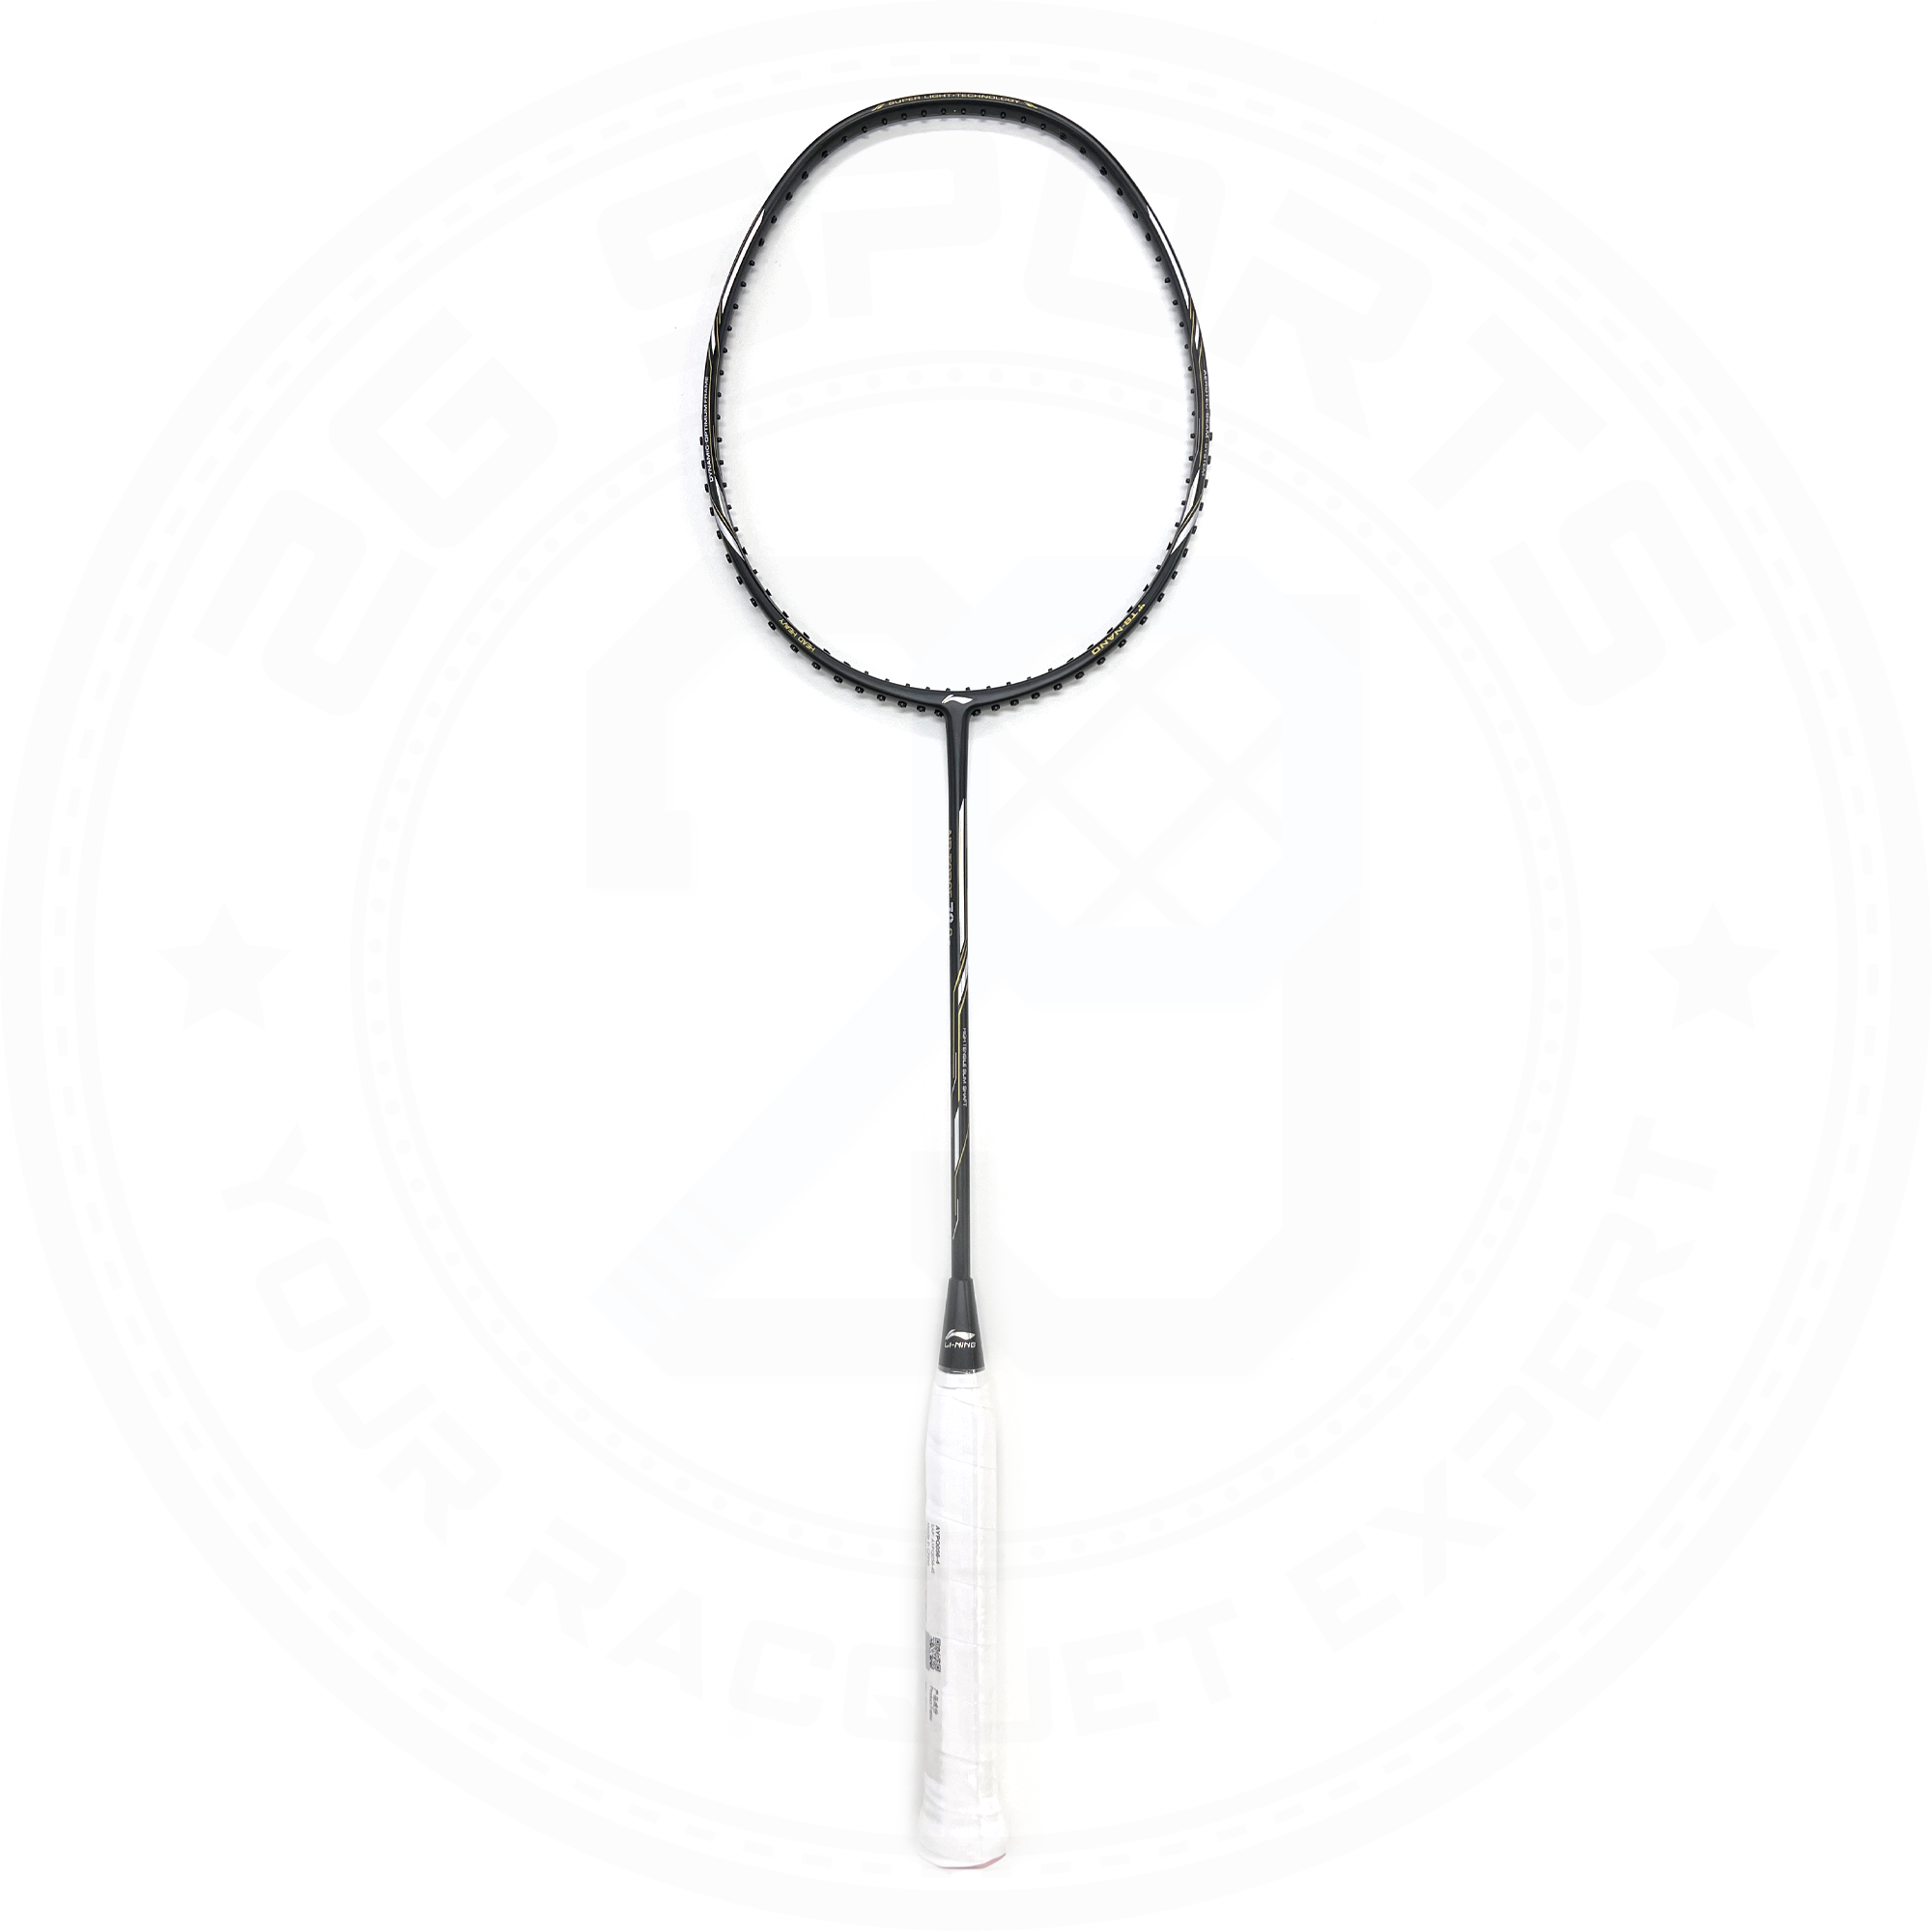 Li-Ning Air Force 78 G2 Flexible shaft Lightweight Badminton Racquet Black 5U(79g)G6